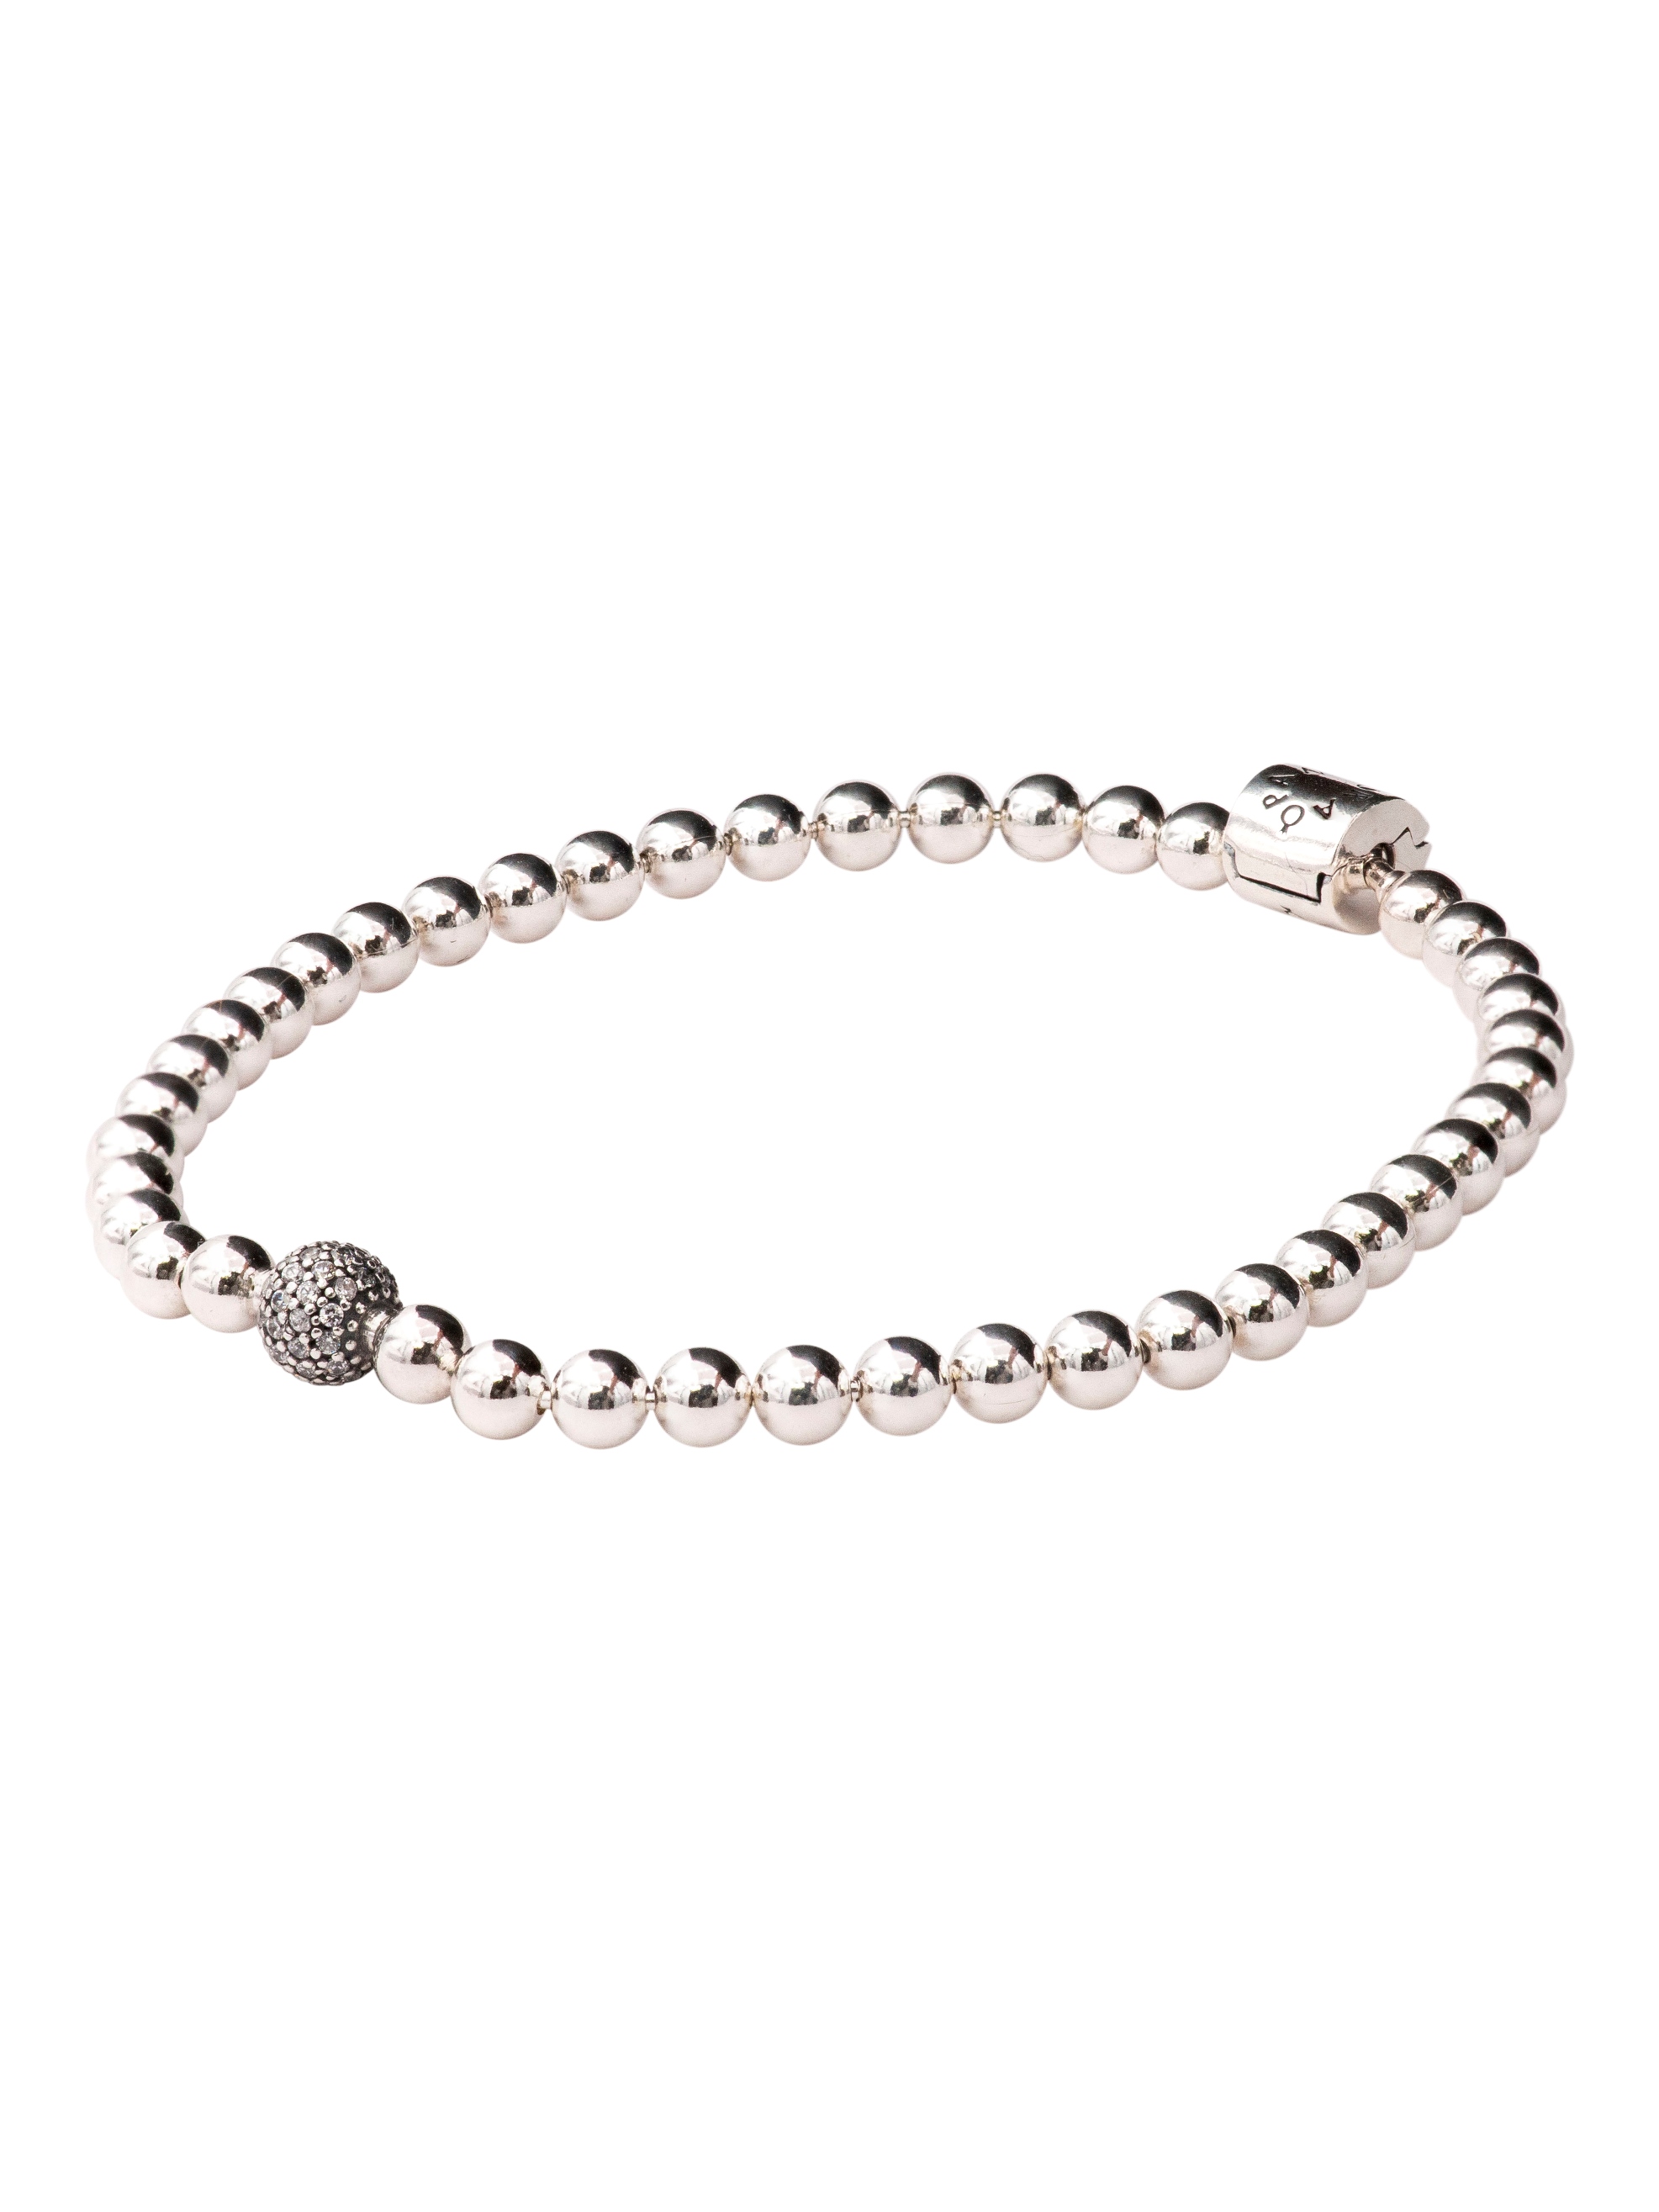 PANDORA Beads & Pave Bracelet Size 19 - 598342CZ-19 - image 1 of 6